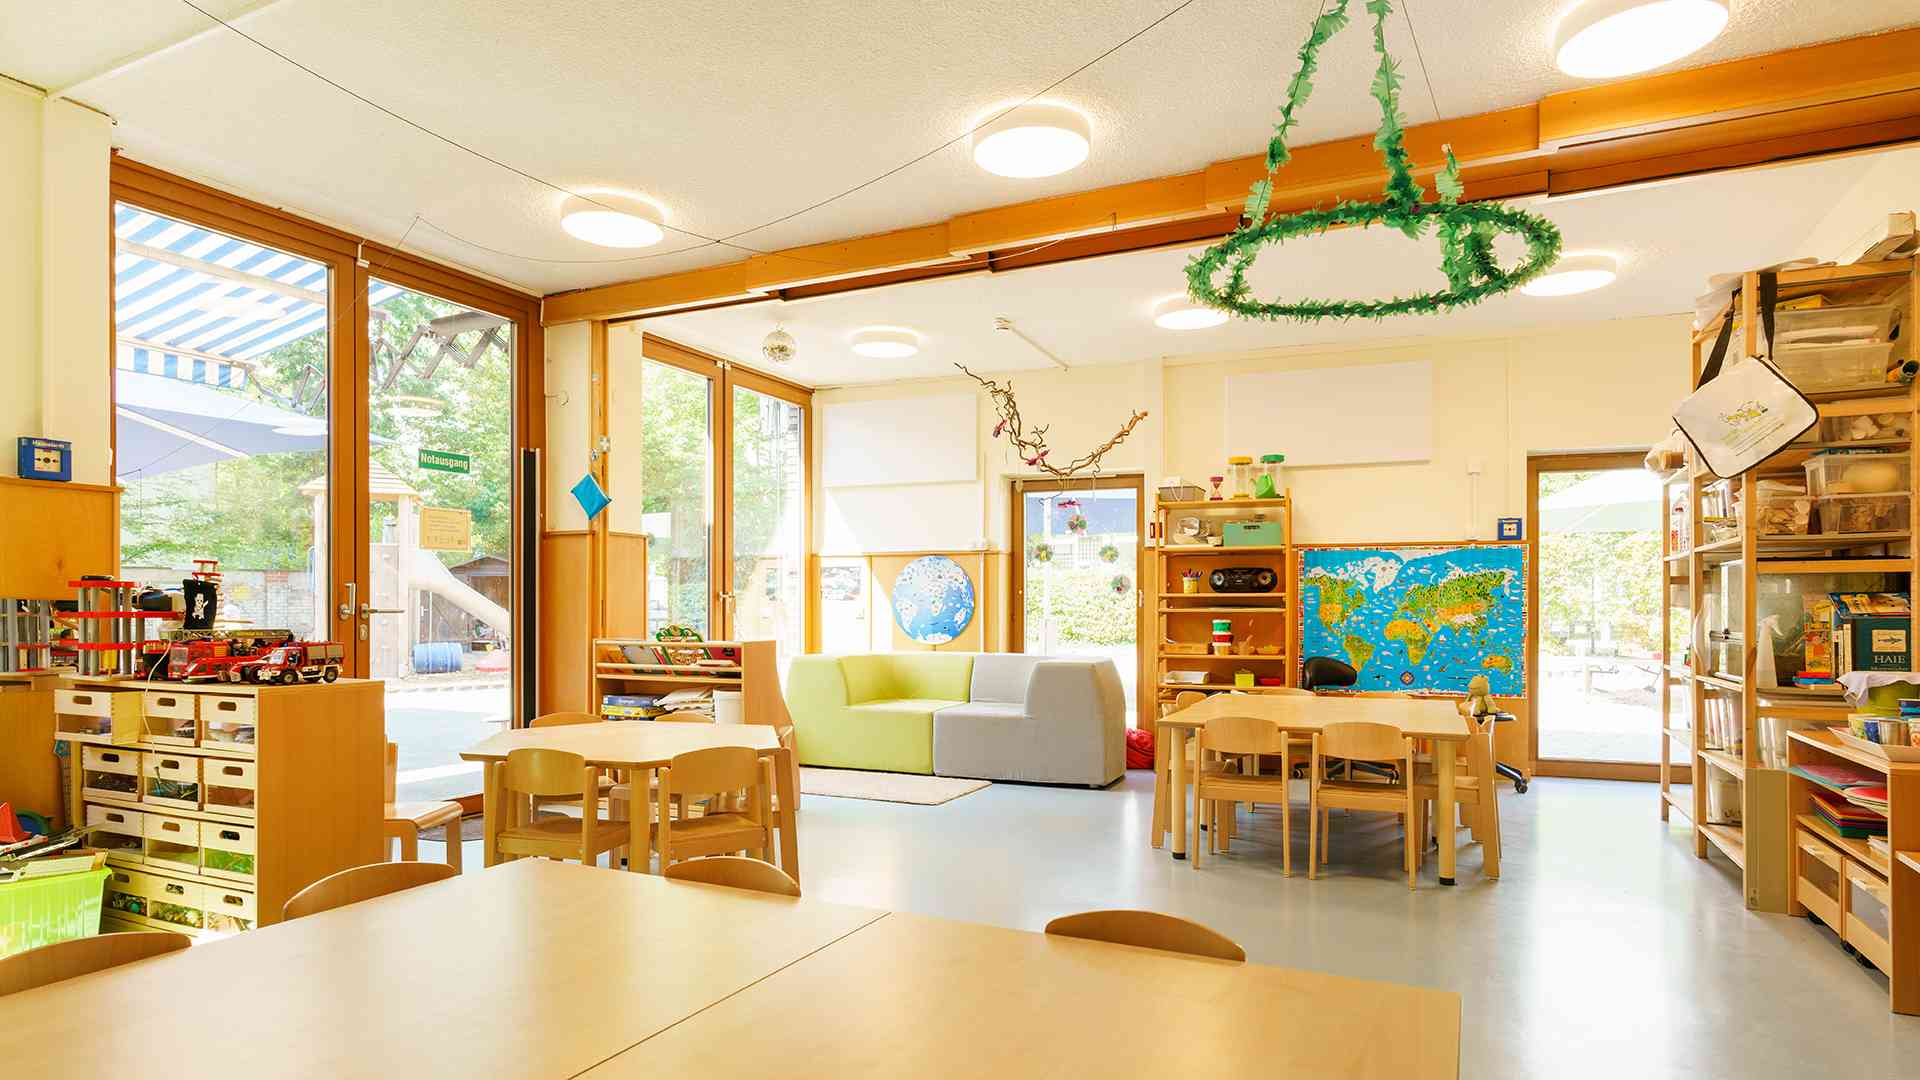 Innenbereich im Kinderzentrum Bernhard-Grzimek-Allee